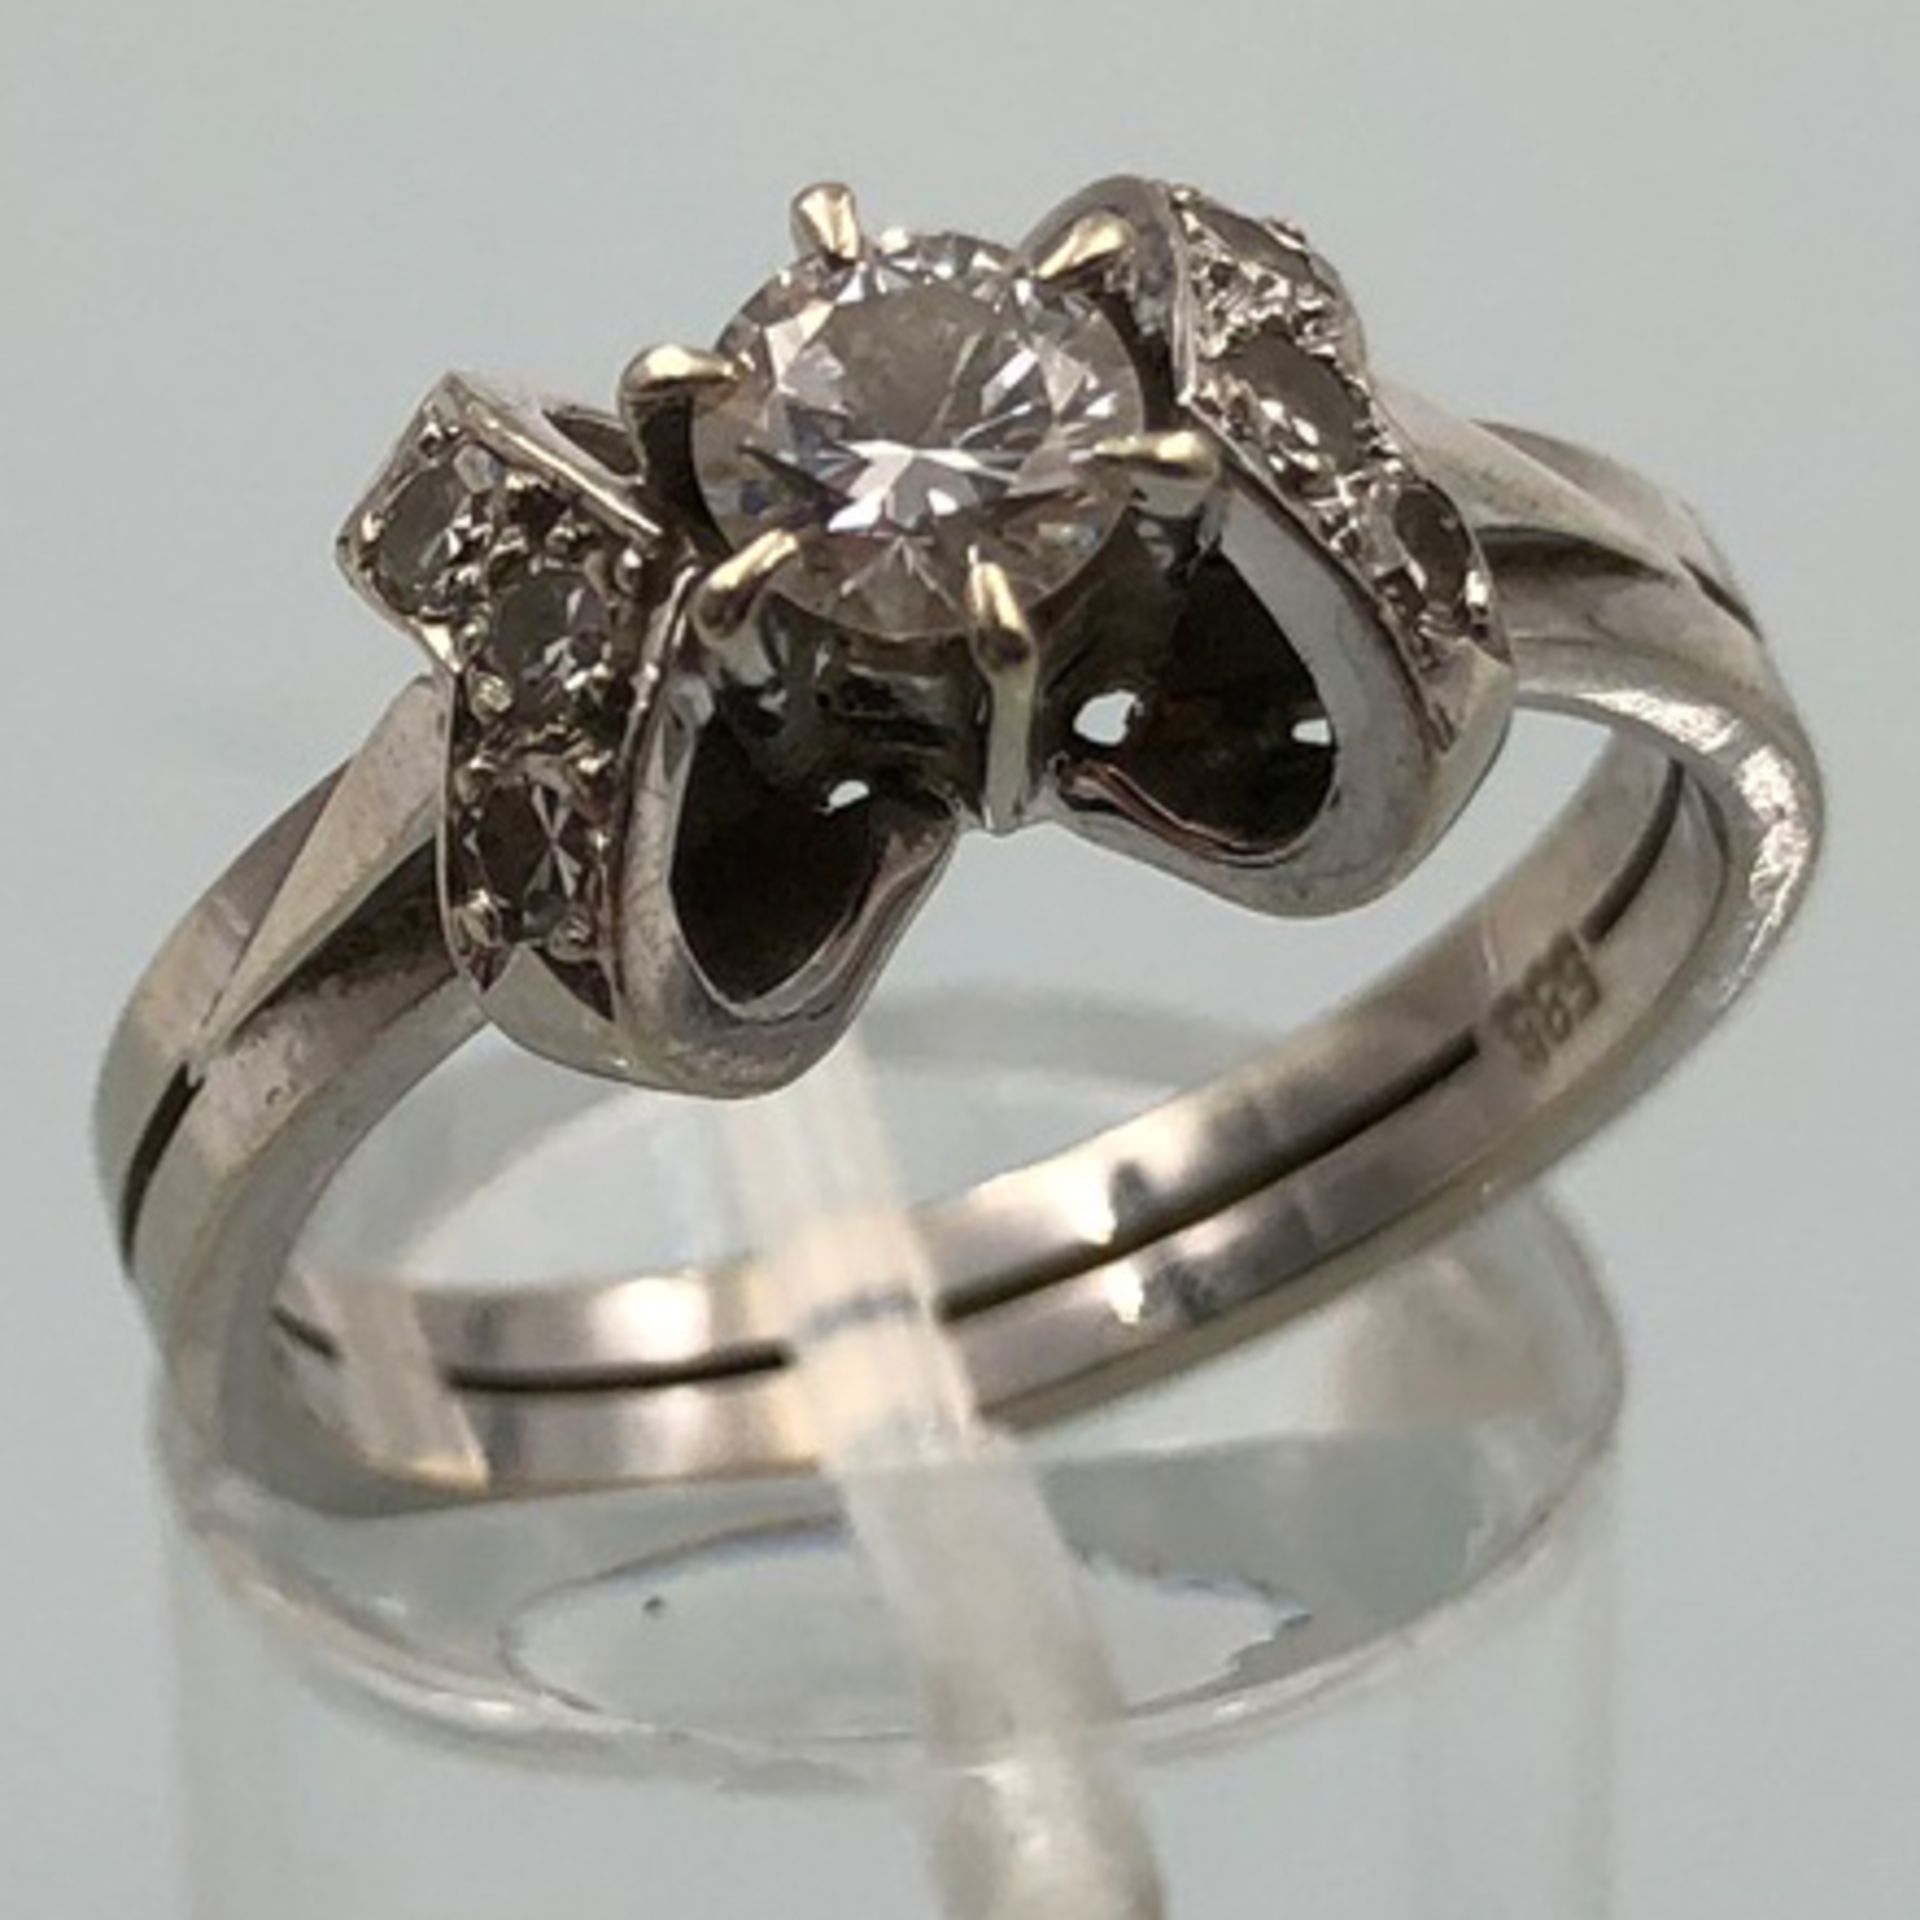 Weiß Gold 585. Ring mit Brillanten.4,0 Gramm Gesamtgewicht. Der mittige Diamant 4,48 mm Durchmesser, - Bild 13 aus 13